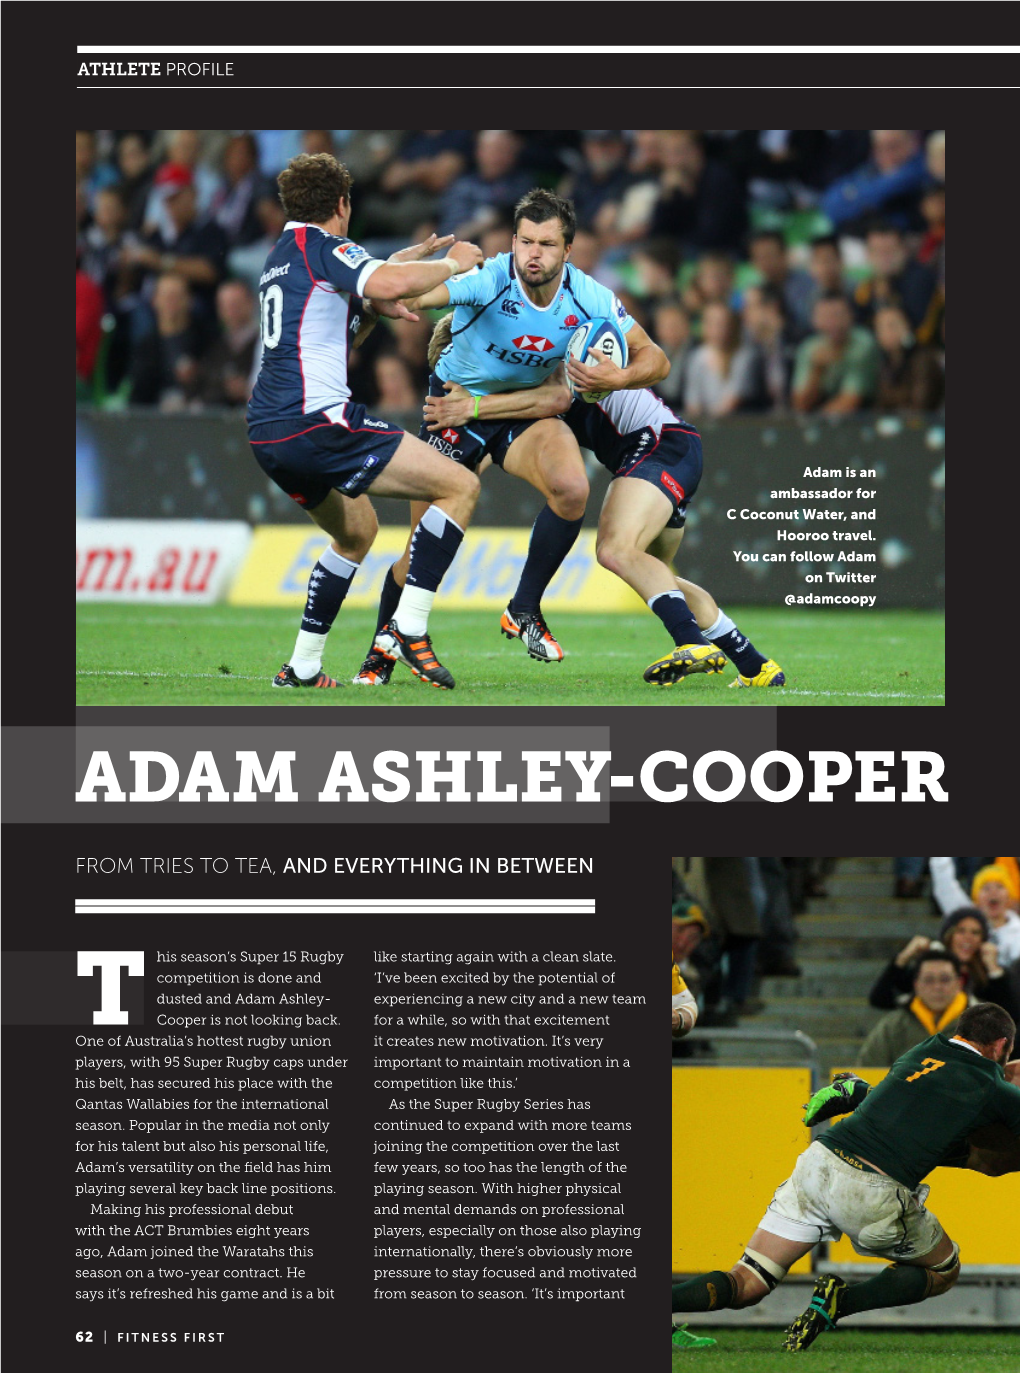 Adam Ashley-Cooper